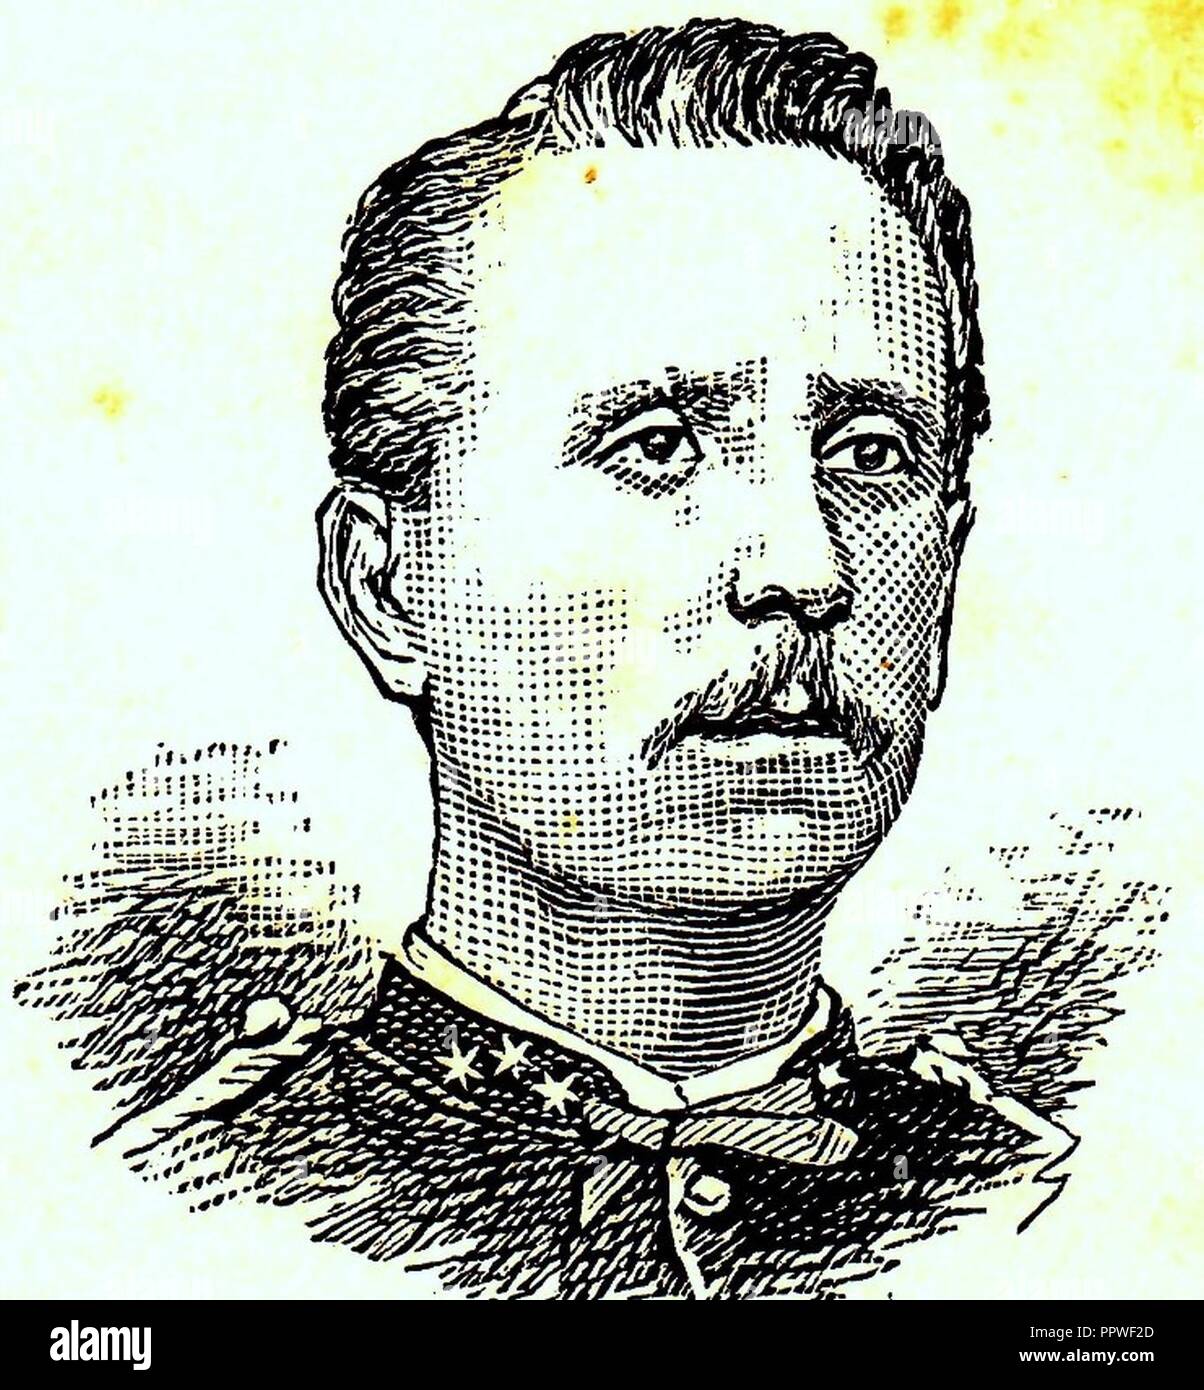 Botter, LF. Kapitein Inf. 10. Dezember 1843-24 november 1882 tgv verwondingen bij tocht naar Moenloe. Stockfoto